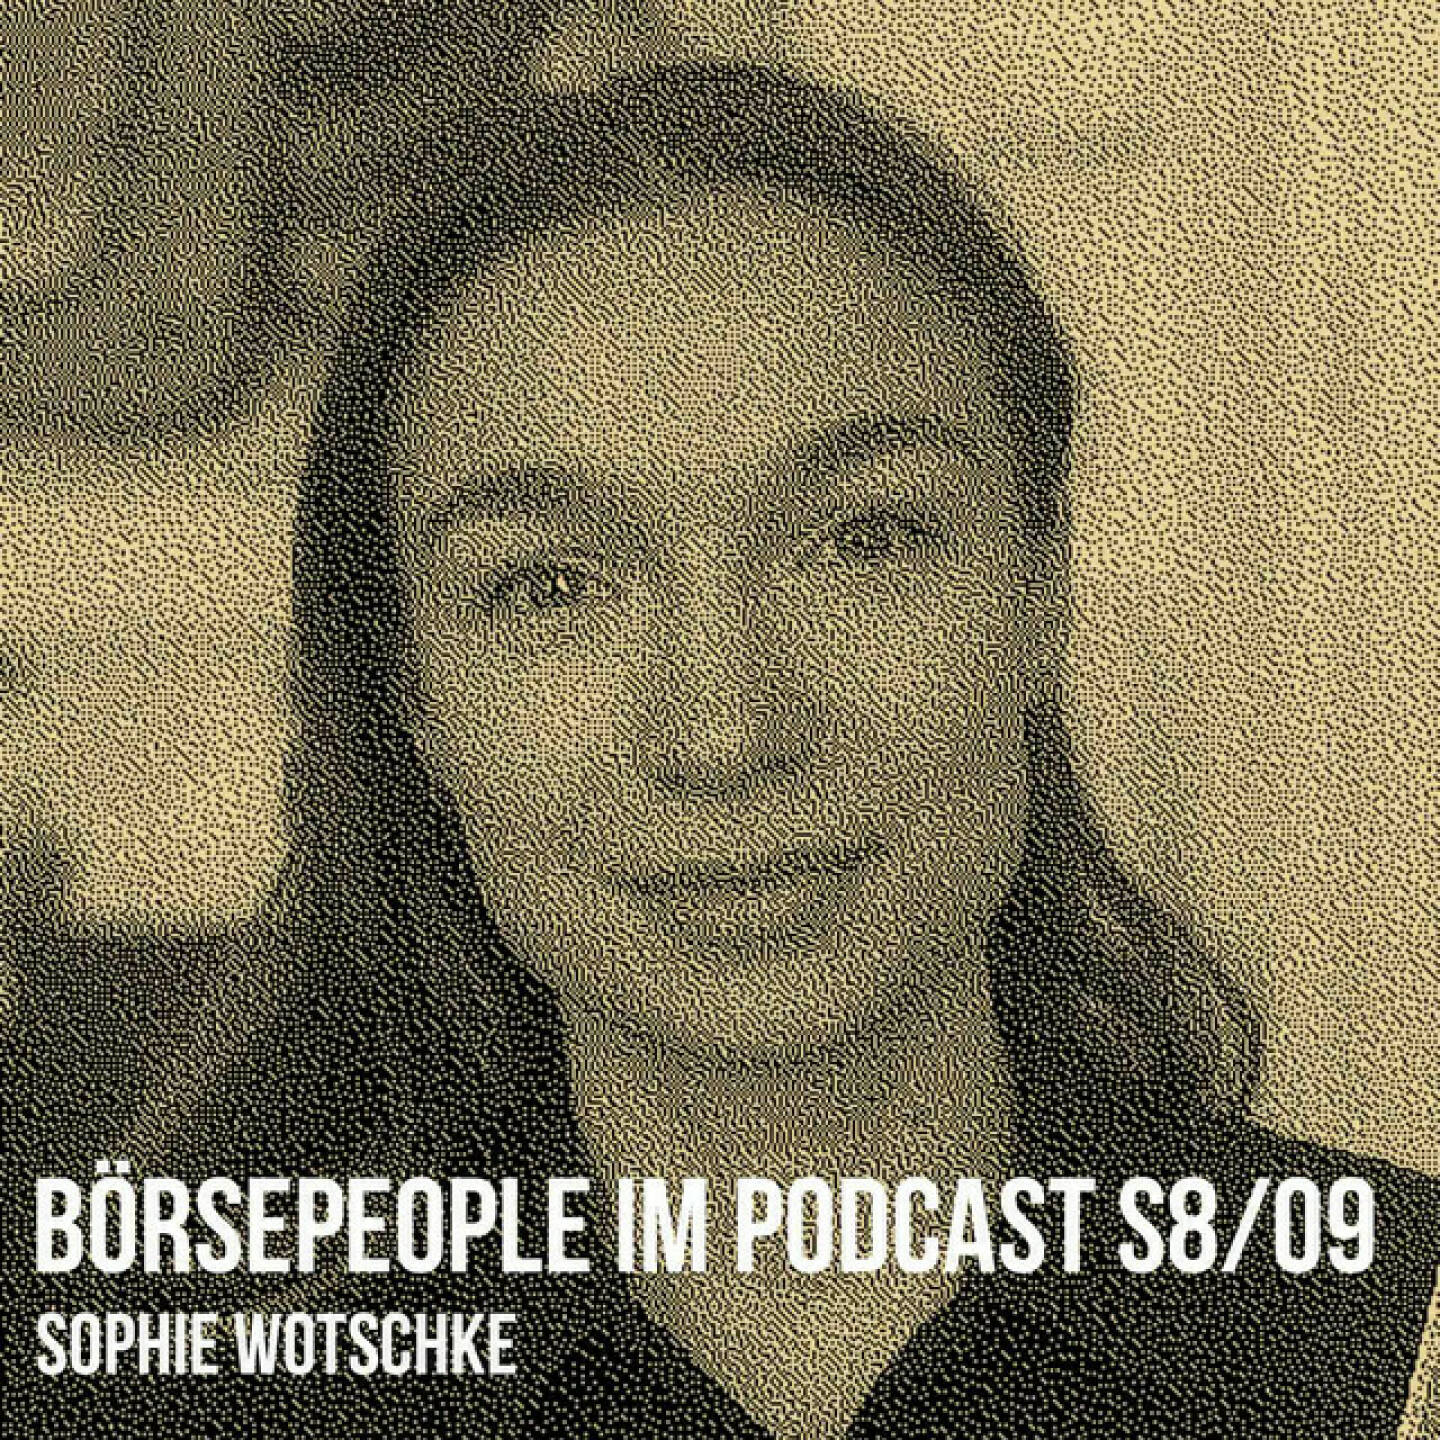 https://open.spotify.com/episode/6SmKzJLdUXfHEJfYncIMxw
Börsepeople im Podcast S8/09: Sophie Wotschke - <p>Sophie Wotschke ist Juristin, Vorsitzende der Junos und willkommene Mitstreiterin, wenn es um die Abschaffung der Schlechterstellung von Eigenvorsorge in Aktien geht, letztendlich muss sich ein neues Aufstiegsversprechen ja auch irgendwie ausgehen. Wir sprechen über ein Studium in Wien, über Erfolge bei Moot-Bewerben (kannte ich nicht) gegen 375 Mitbewerber-Teams, über Tätigkeit bei Cerha Hempel, Schönherr und Freshfields, Input für rechtsfux und die aktuelle Station Knötzl Haugeneder Netal RA. Vor allem geht es aber um Politik. Die Bundesvorsitzende der Junos (Neos) setzte sich zuletzt lautstark für einen aktienbasierten Fonds (mind. 1 Mrd. Euro jährlich) als Baustein der Pensionsvorsorge ein. Wir sprechen über Aufstiegsversprechen vs. Abstiegsrealität, Blockaden, das Thema &#34;Warum nicht für vernünftige Pensionsvorsorge demonstrieren?&#34;, über Ideologien, Finanzbildung, Abseitsfalle im Fussball und FM4 Projekt X. Auch eigene Investments schneiden wir an.<br/><br/><a href=https://junos.at target=_blank>https://junos.at</a><br/><br/>About: Die Serie Börsepeople findet im Rahmen von <a href=http://www.audio-cd.at target=_blank>http://www.audio-cd.at</a> und dem Podcast &#34;Audio-CD.at Indie Podcasts&#34; statt. Es handelt sich dabei um typische Personality- und Werdegang-Gespräche. Die Season 8 umfasst unter dem Motto „23 Börsepeople“ wieder 23 Talks  Presenter der Season 8 ist die Rosinger Group <a href=https://www.rosingerfinance.com. target=_blank>https://www.rosingerfinance.com..</a> Welcher der meistgehörte Börsepeople Podcast ist, sieht man unter <a href=http://www.audio-cd.at/people target=_blank>http://www.audio-cd.at/people.</a> Der Zwischenstand des laufenden Rankings ist tagesaktuell um 12 Uhr aktualisiert.<br/><br/>Bewertungen bei Apple (oder auch Spotify) machen mir Freude: <a href=https://podcasts.apple.com/at/podcast/audio-cd-at-indie-podcasts-wiener-boerse-sport-musik-und-mehr/id1484919130 target=_blank>https://podcasts.apple.com/at/podcast/audio-cd-at-indie-podcasts-wiener-boerse-sport-musik-und-mehr/id1484919130</a> .</p>